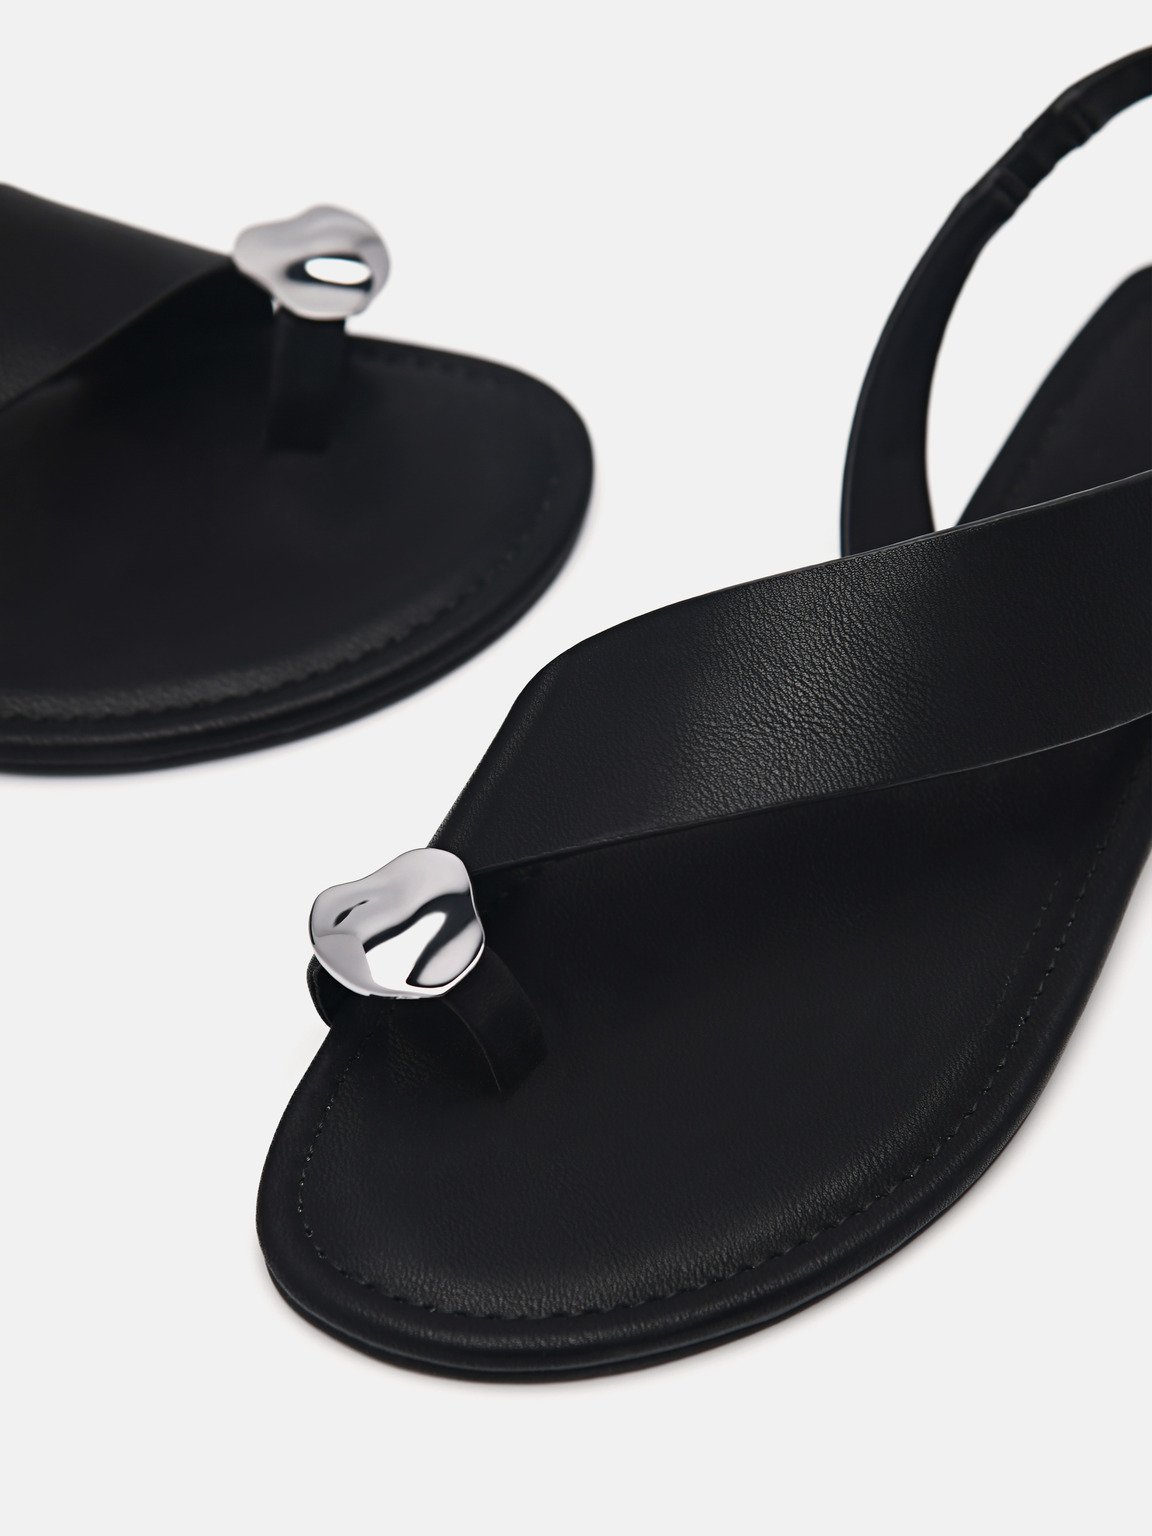 Alexis Toe Loop Sandals, Black